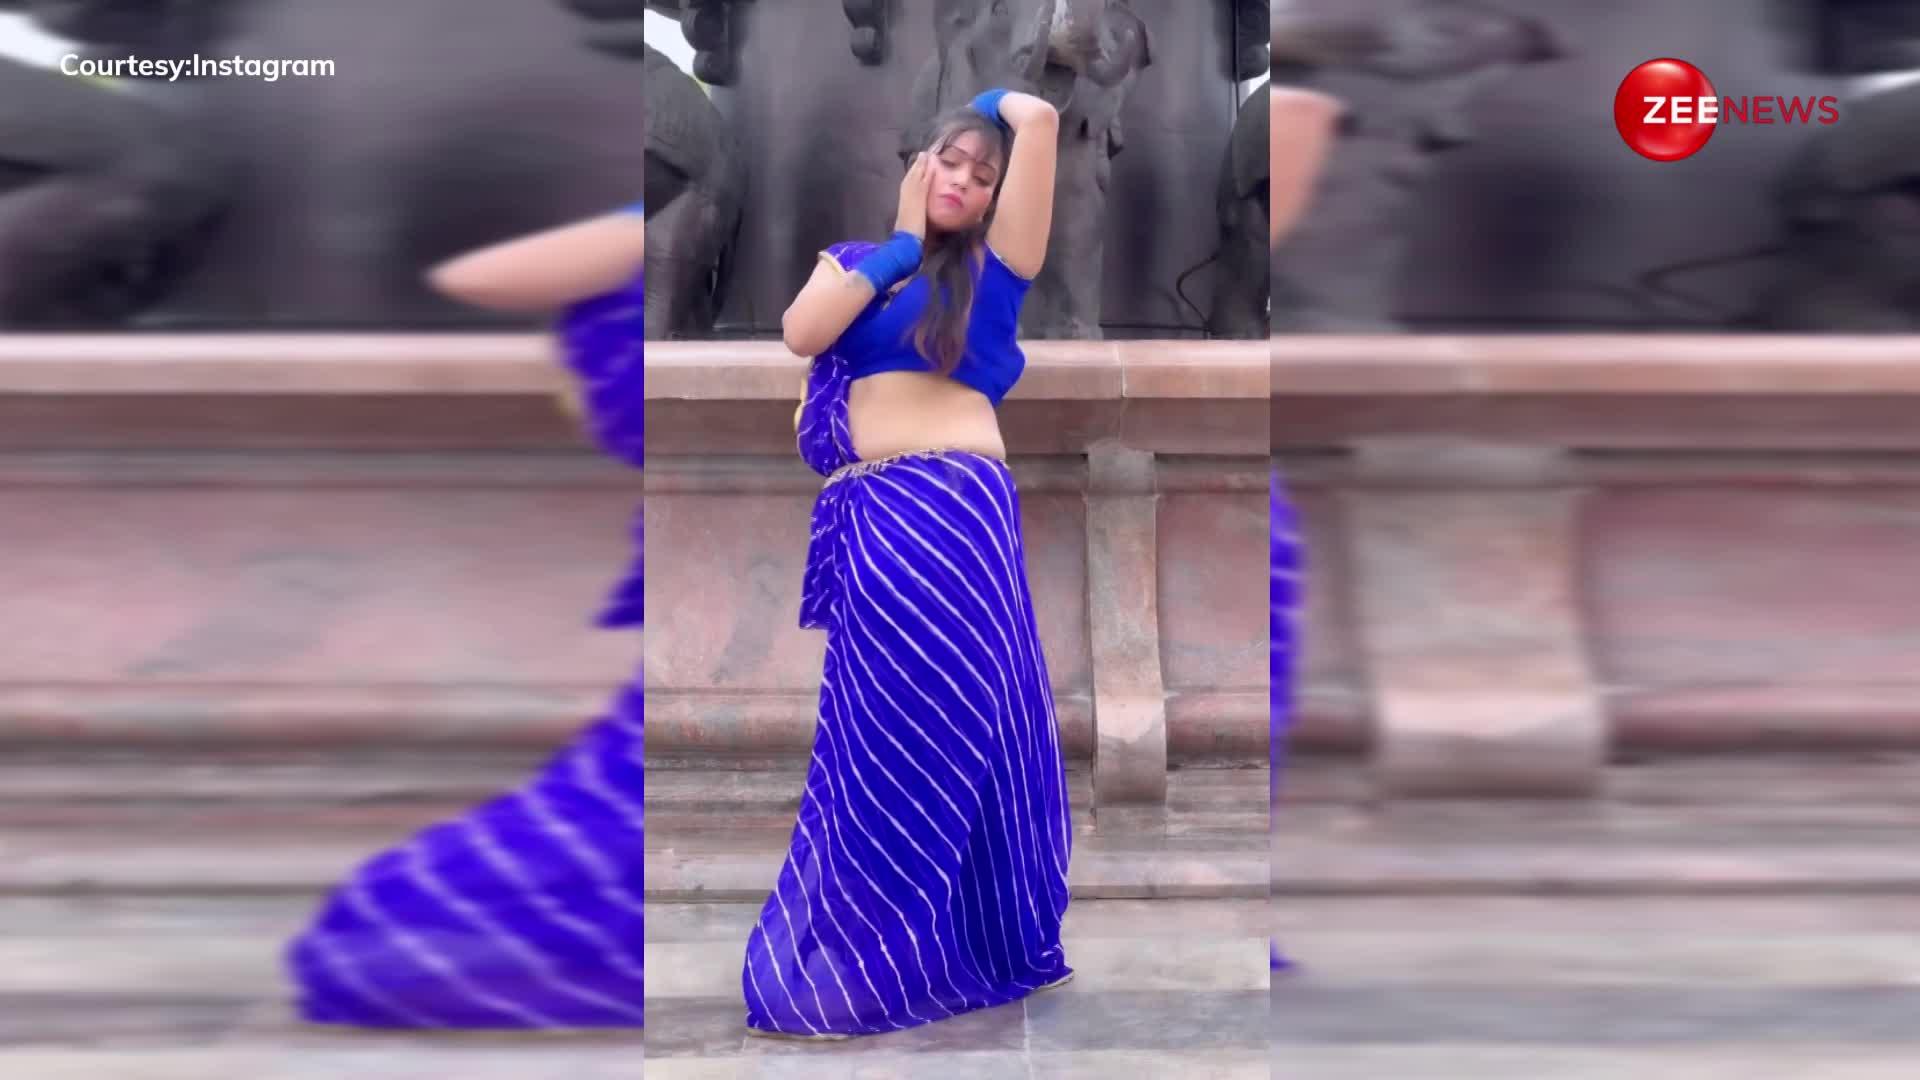 Bhabhi Dance: ब्लू साड़ी में भाभी ने किया जबरदस्त डांस, लोगों ने बार-बार प्ले करके देखा वीडियो